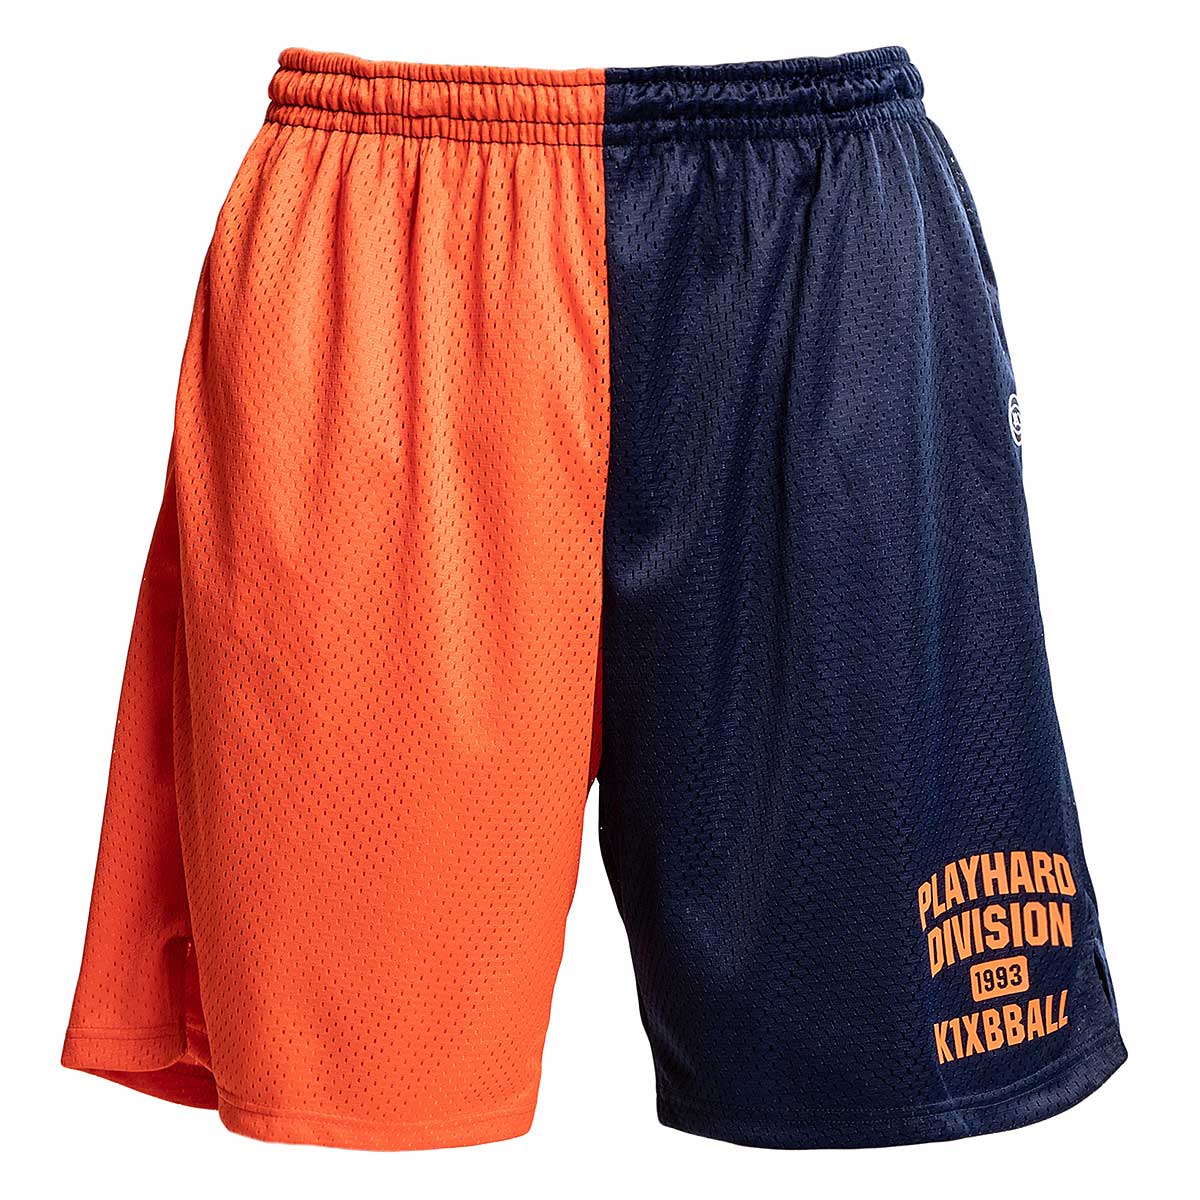 K1X Play Hard Division Mesh Shorts, Orange/Blue